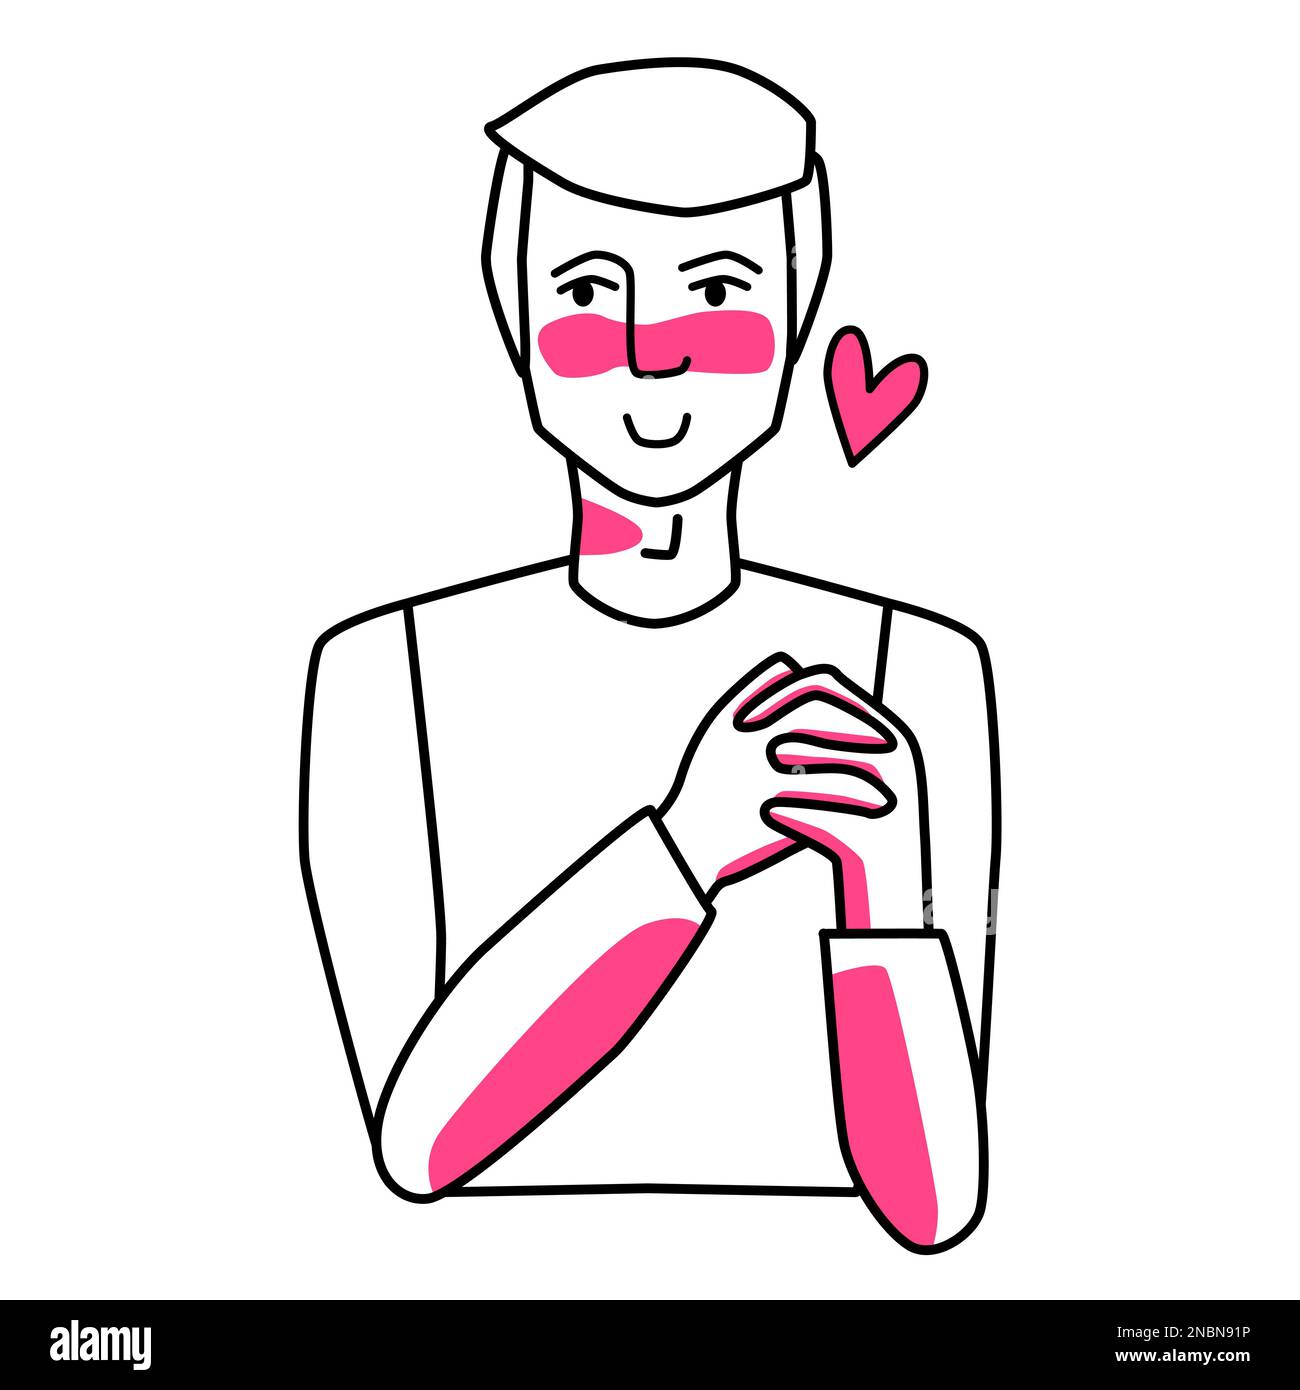 Ein erwachsener Mann, der verliebt ist und Händchen hält. Strichzeichnungen, handgezeichnete Zeichnungen mit pinkfarbenen Punkten. Stock Vektor